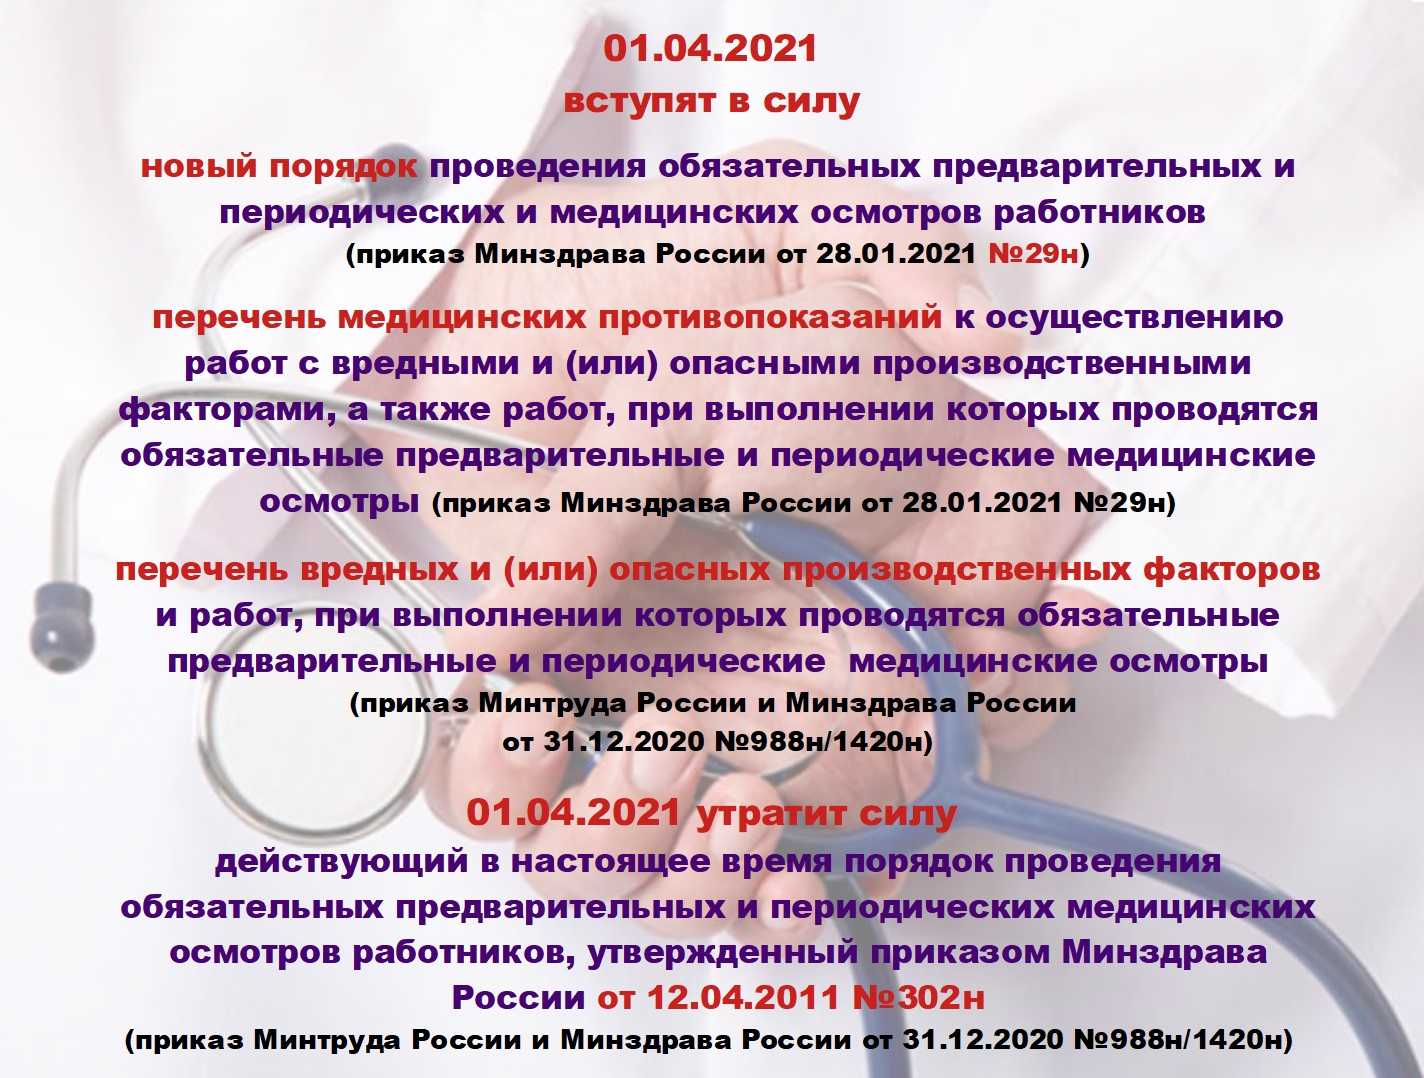 Медосмотры: медицинская книжка работника и личная ответственность руководителя | портал 1nep.ru